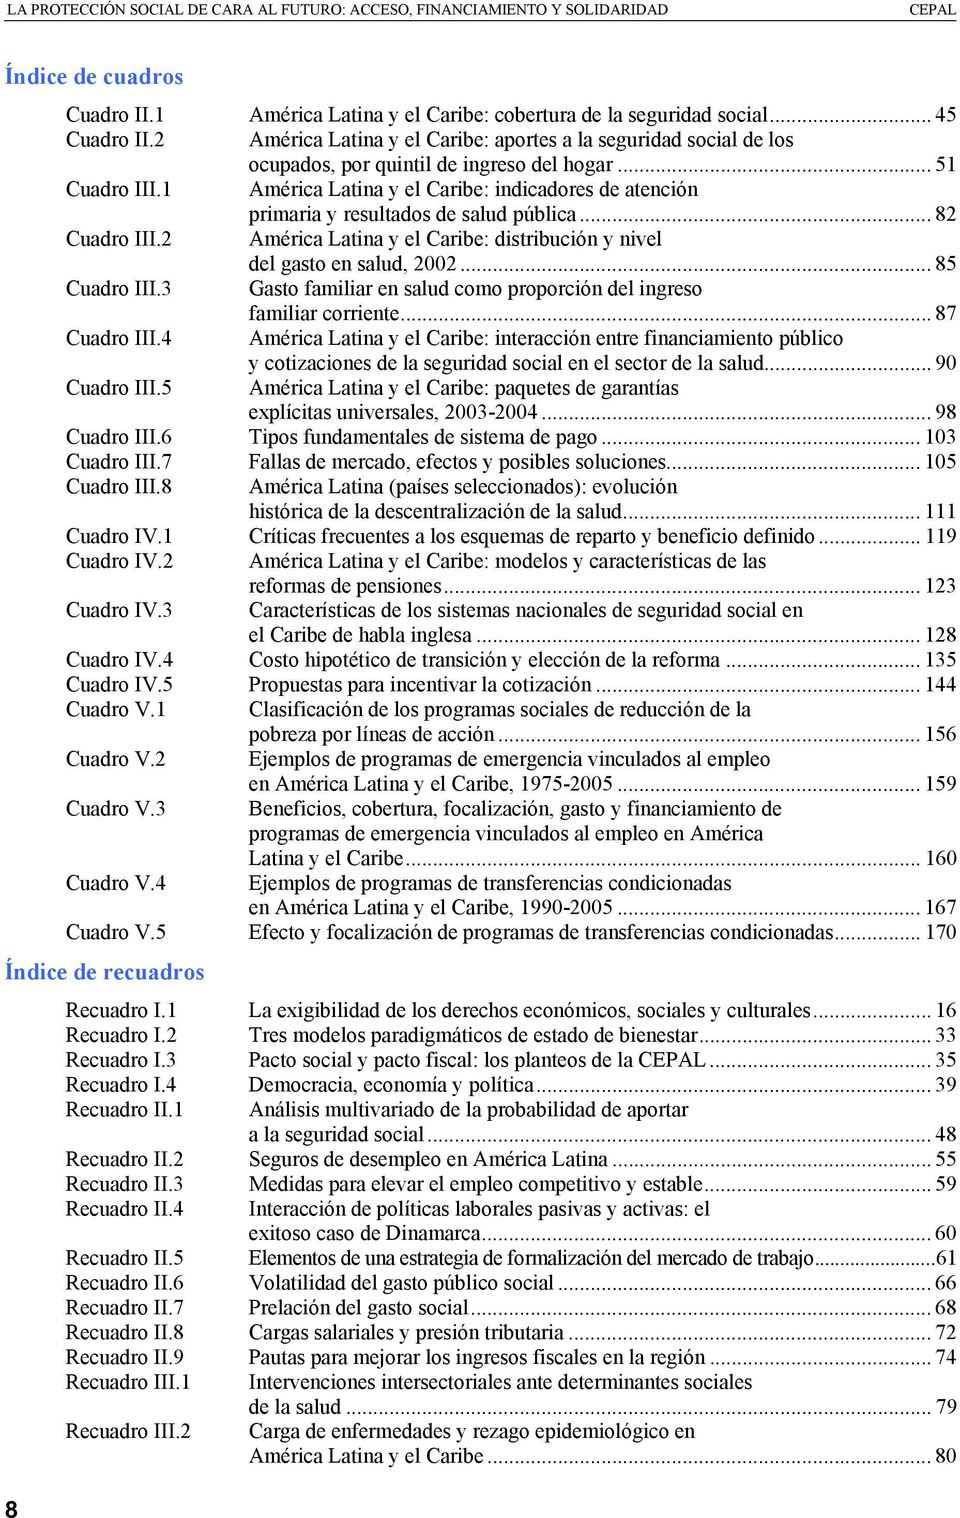 1 América Latina y el Caribe: indicadores de atención primaria y resultados de salud pública... 82 Cuadro III.2 América Latina y el Caribe: distribución y nivel del gasto en salud, 2002.